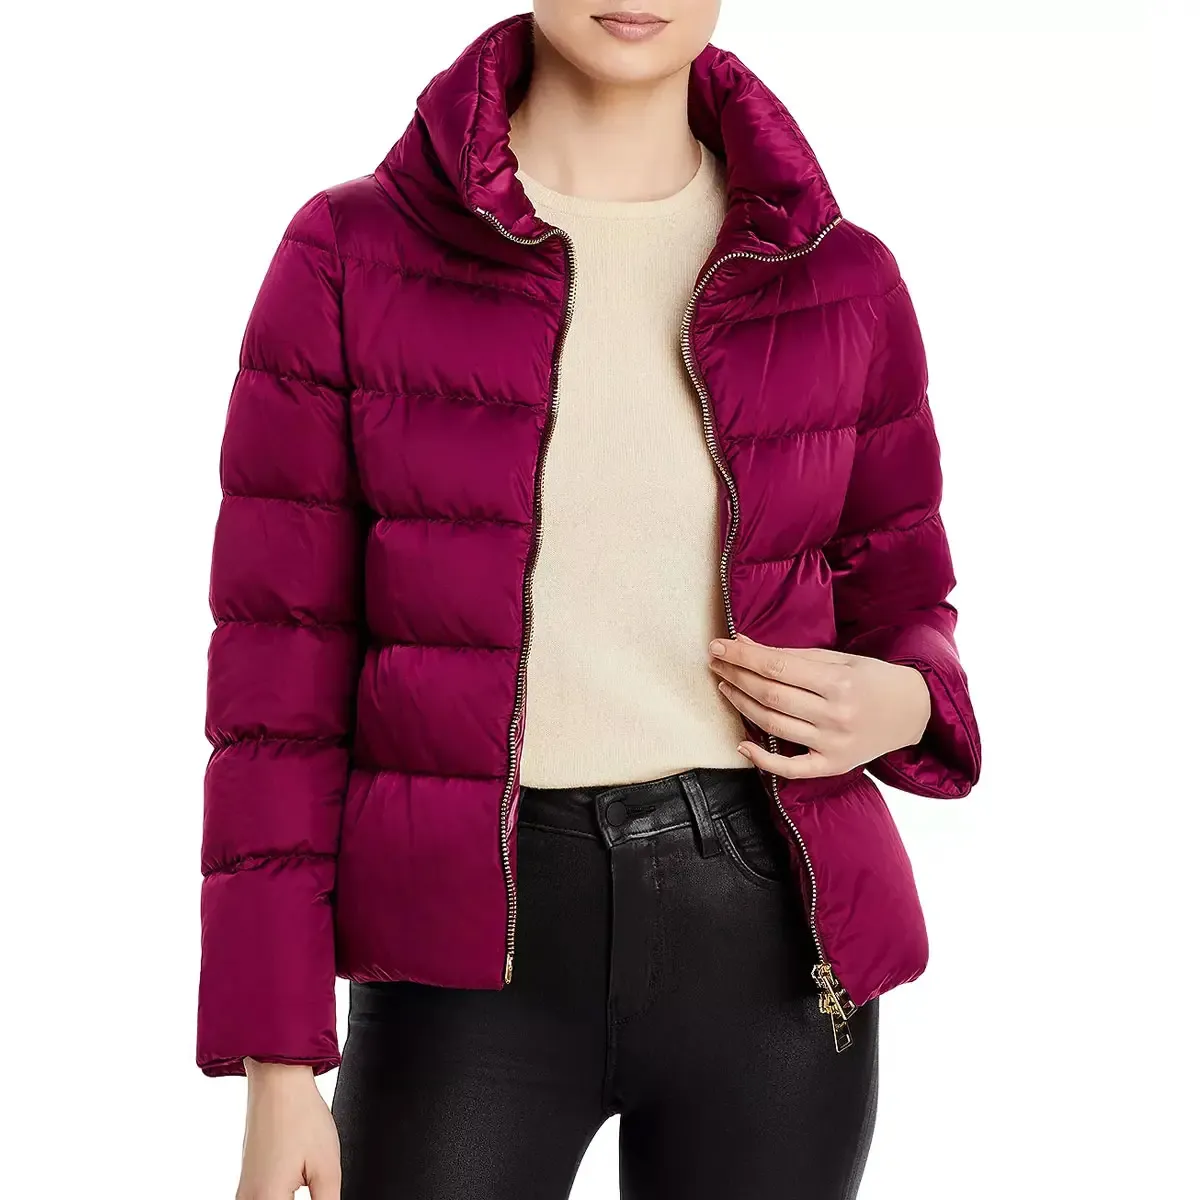 Vendita all'ingrosso calda da donna piumini giacche a piumino senza cappuccio con colletto rosa duro giacca di colore per le donne